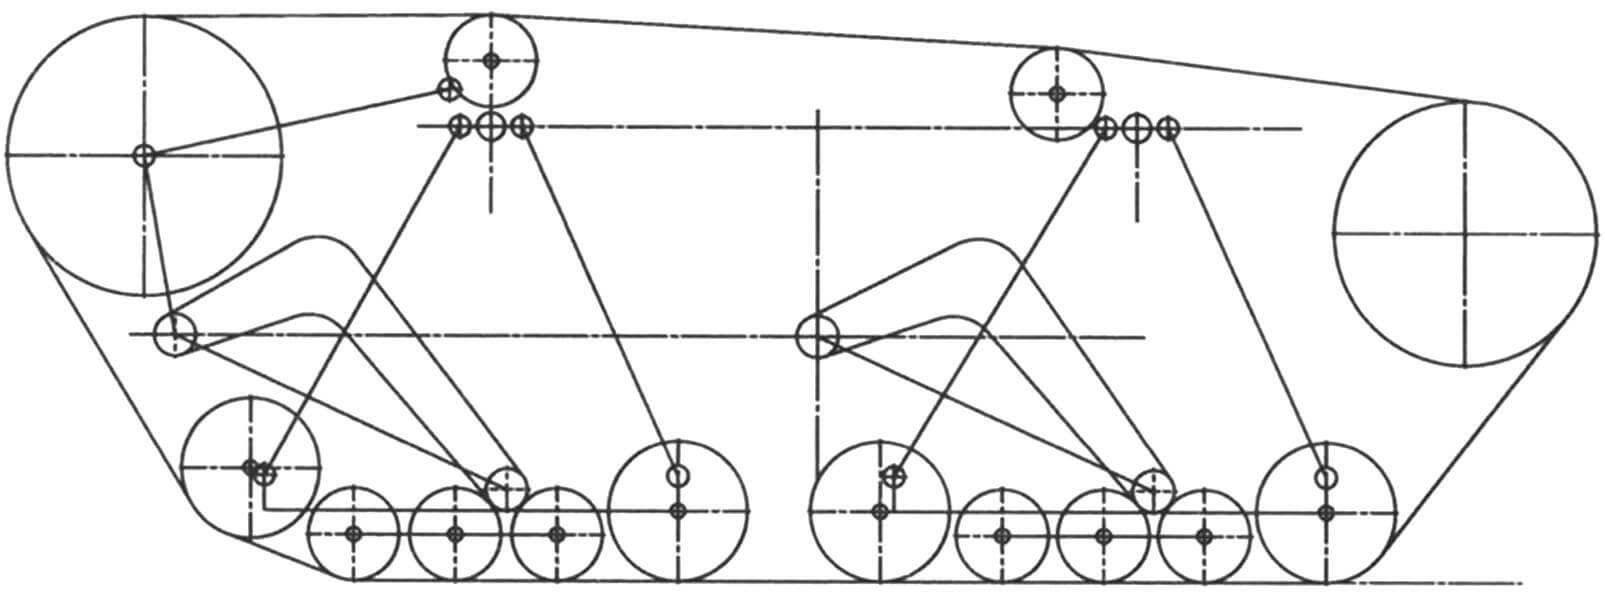 Кинематическая схема разработанной ходовой части